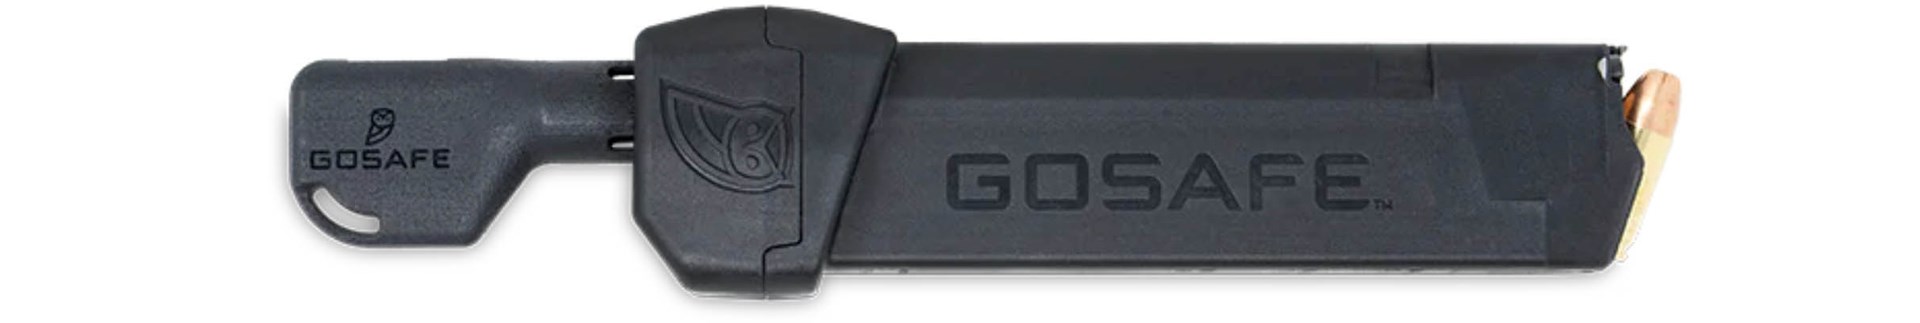 gosafe magazine lock kit for pistol